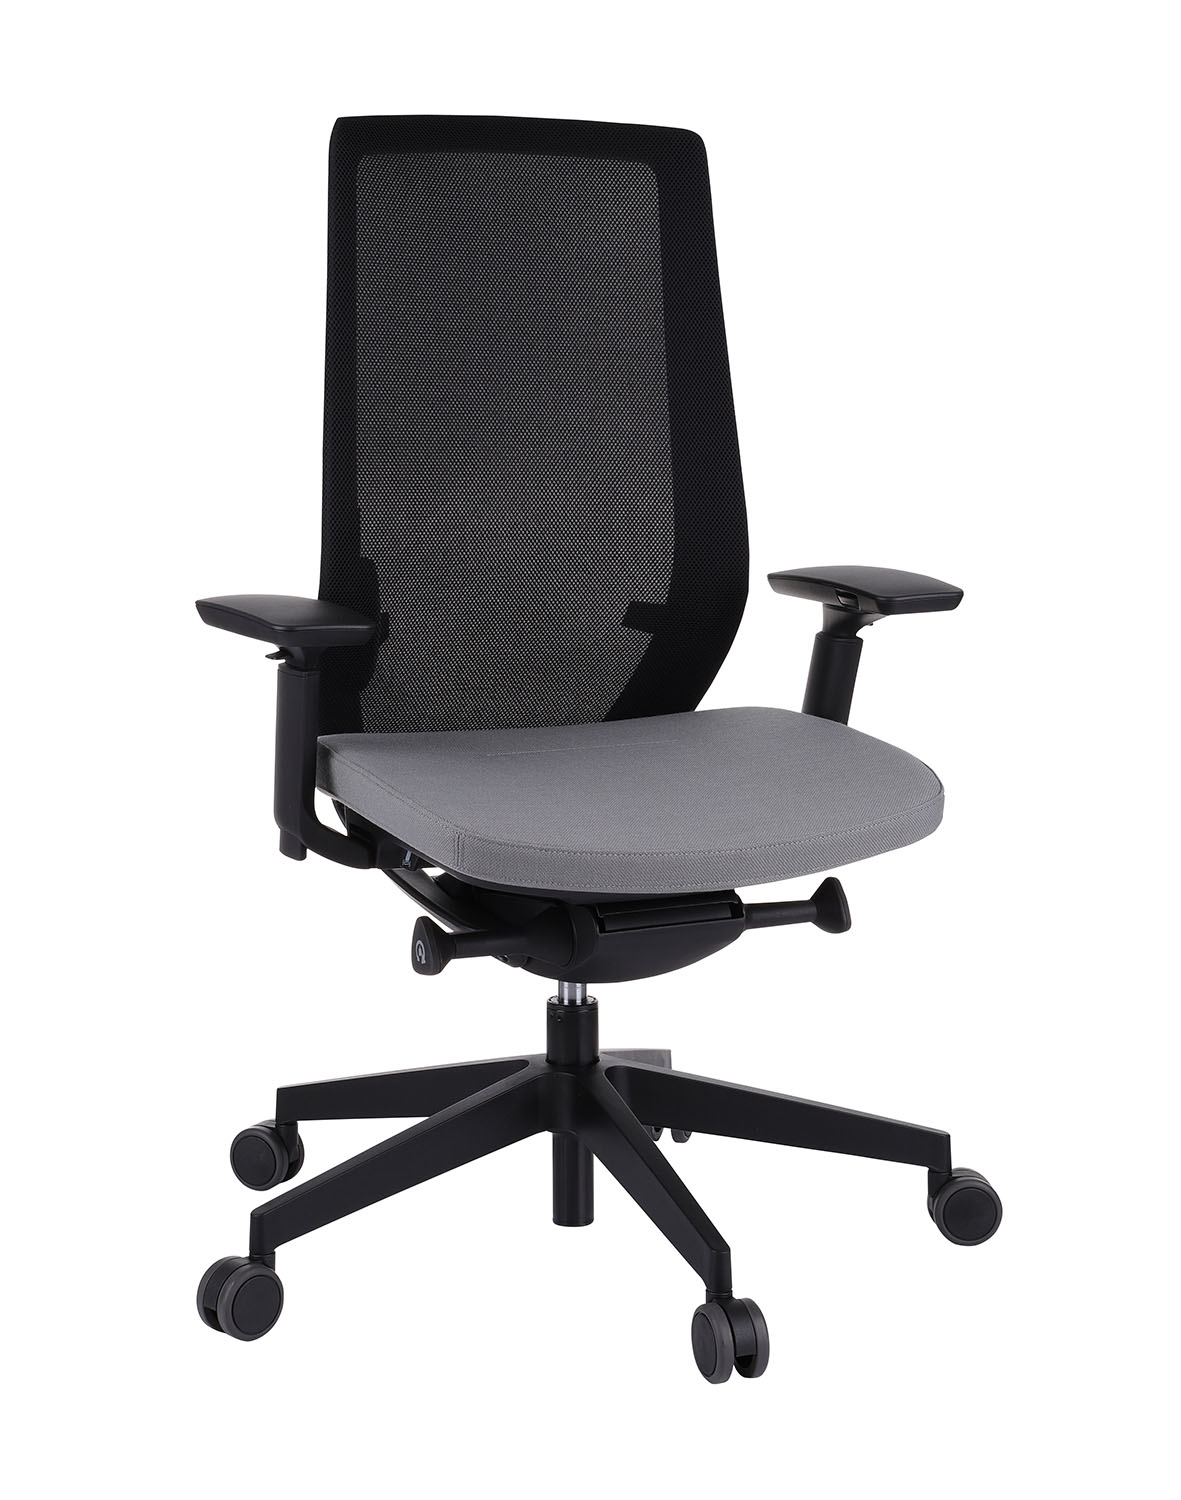 Kancelářská židle Accis Pro 150SFL typ B černá - expedice do 48 h